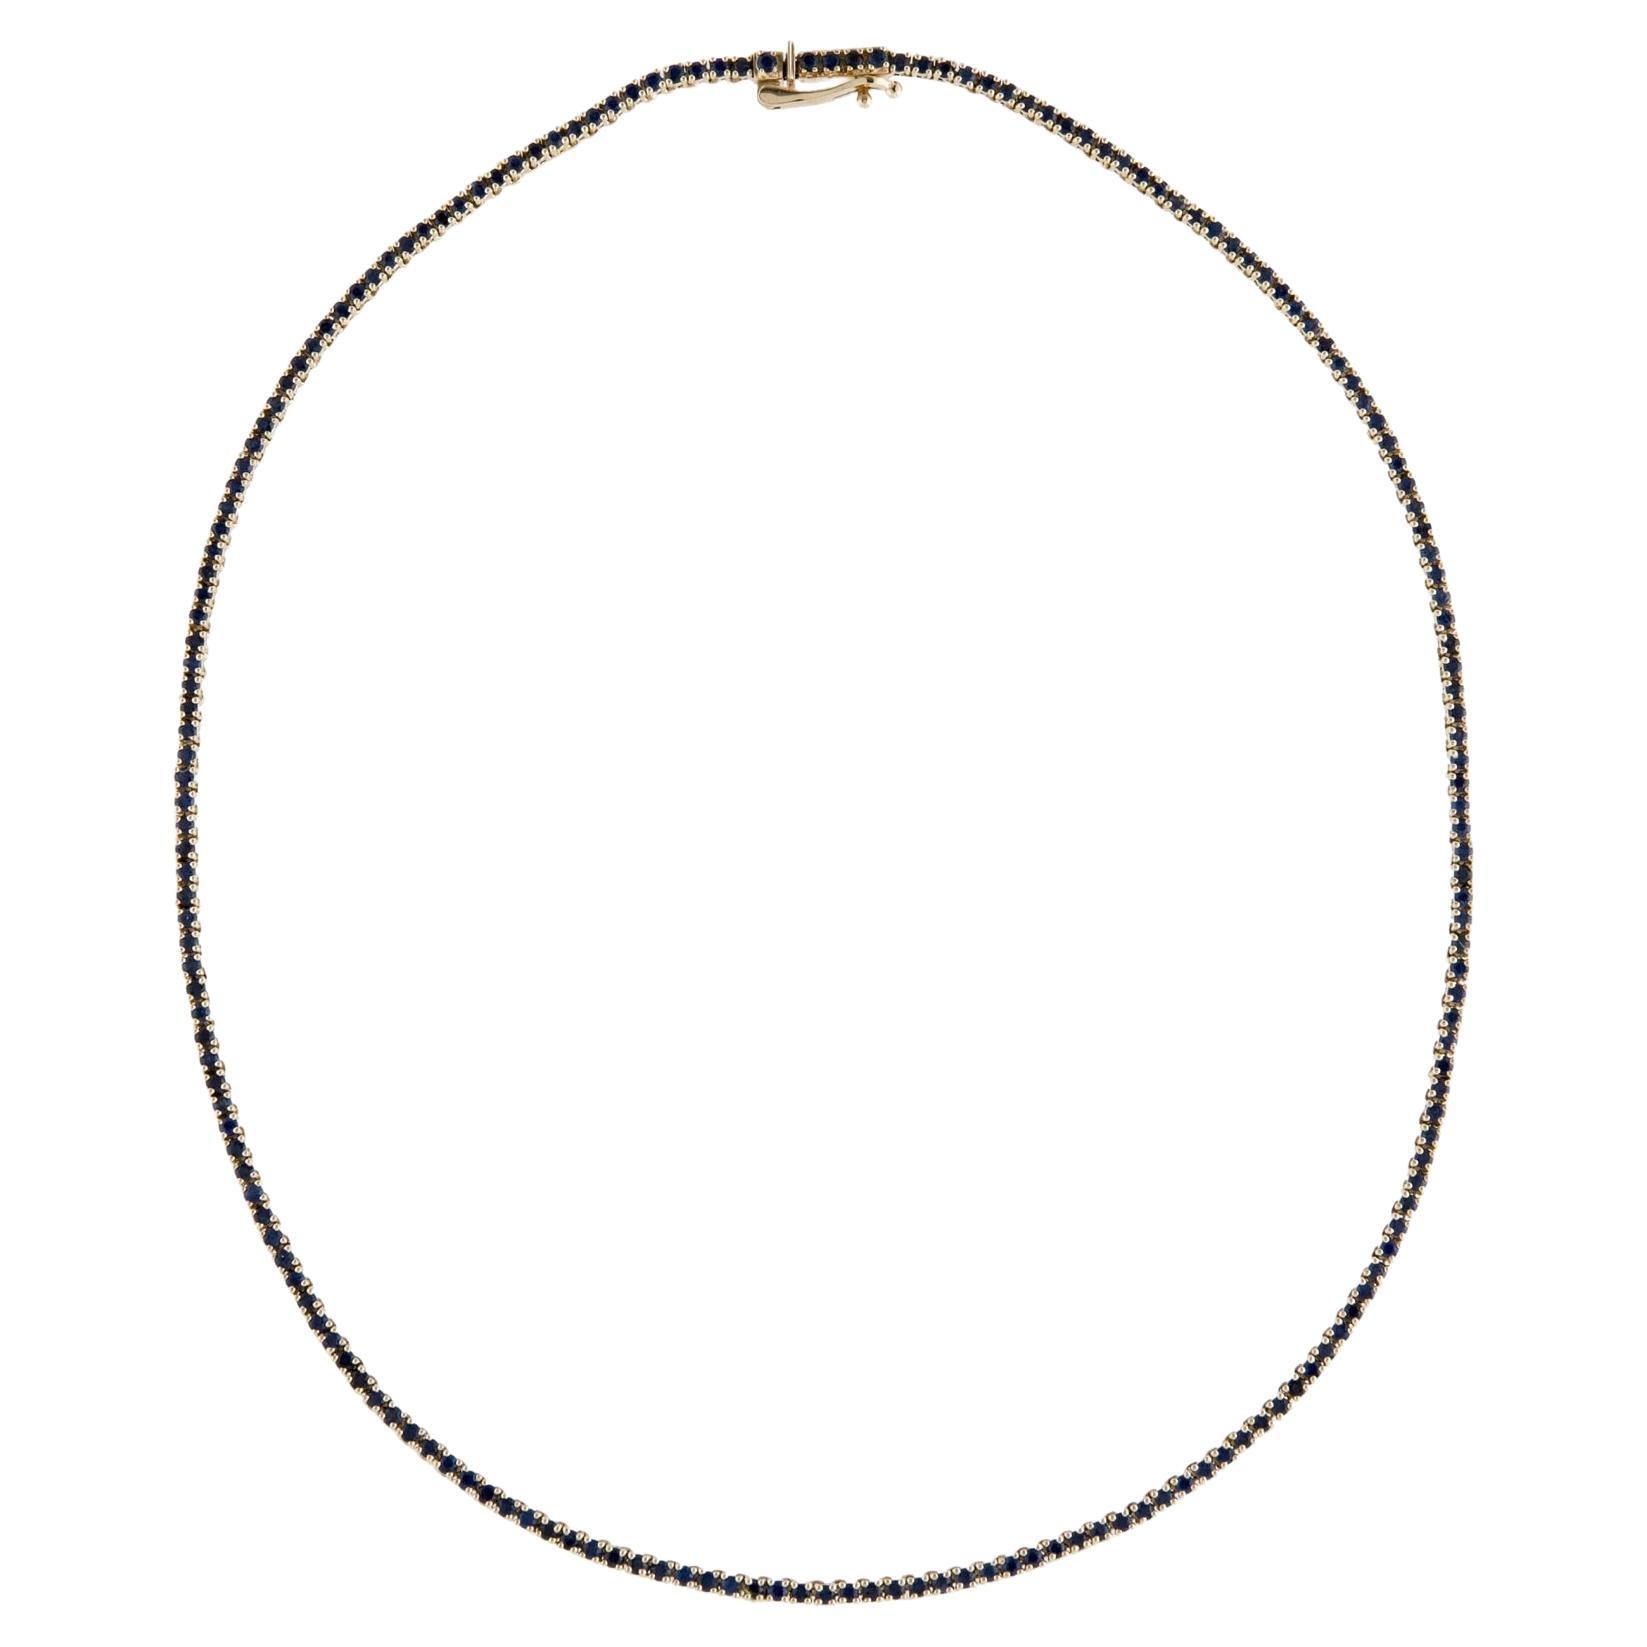 Exquisite 14K Saphir Kette Halskette - Elegant Edelstein Statement Schmuck